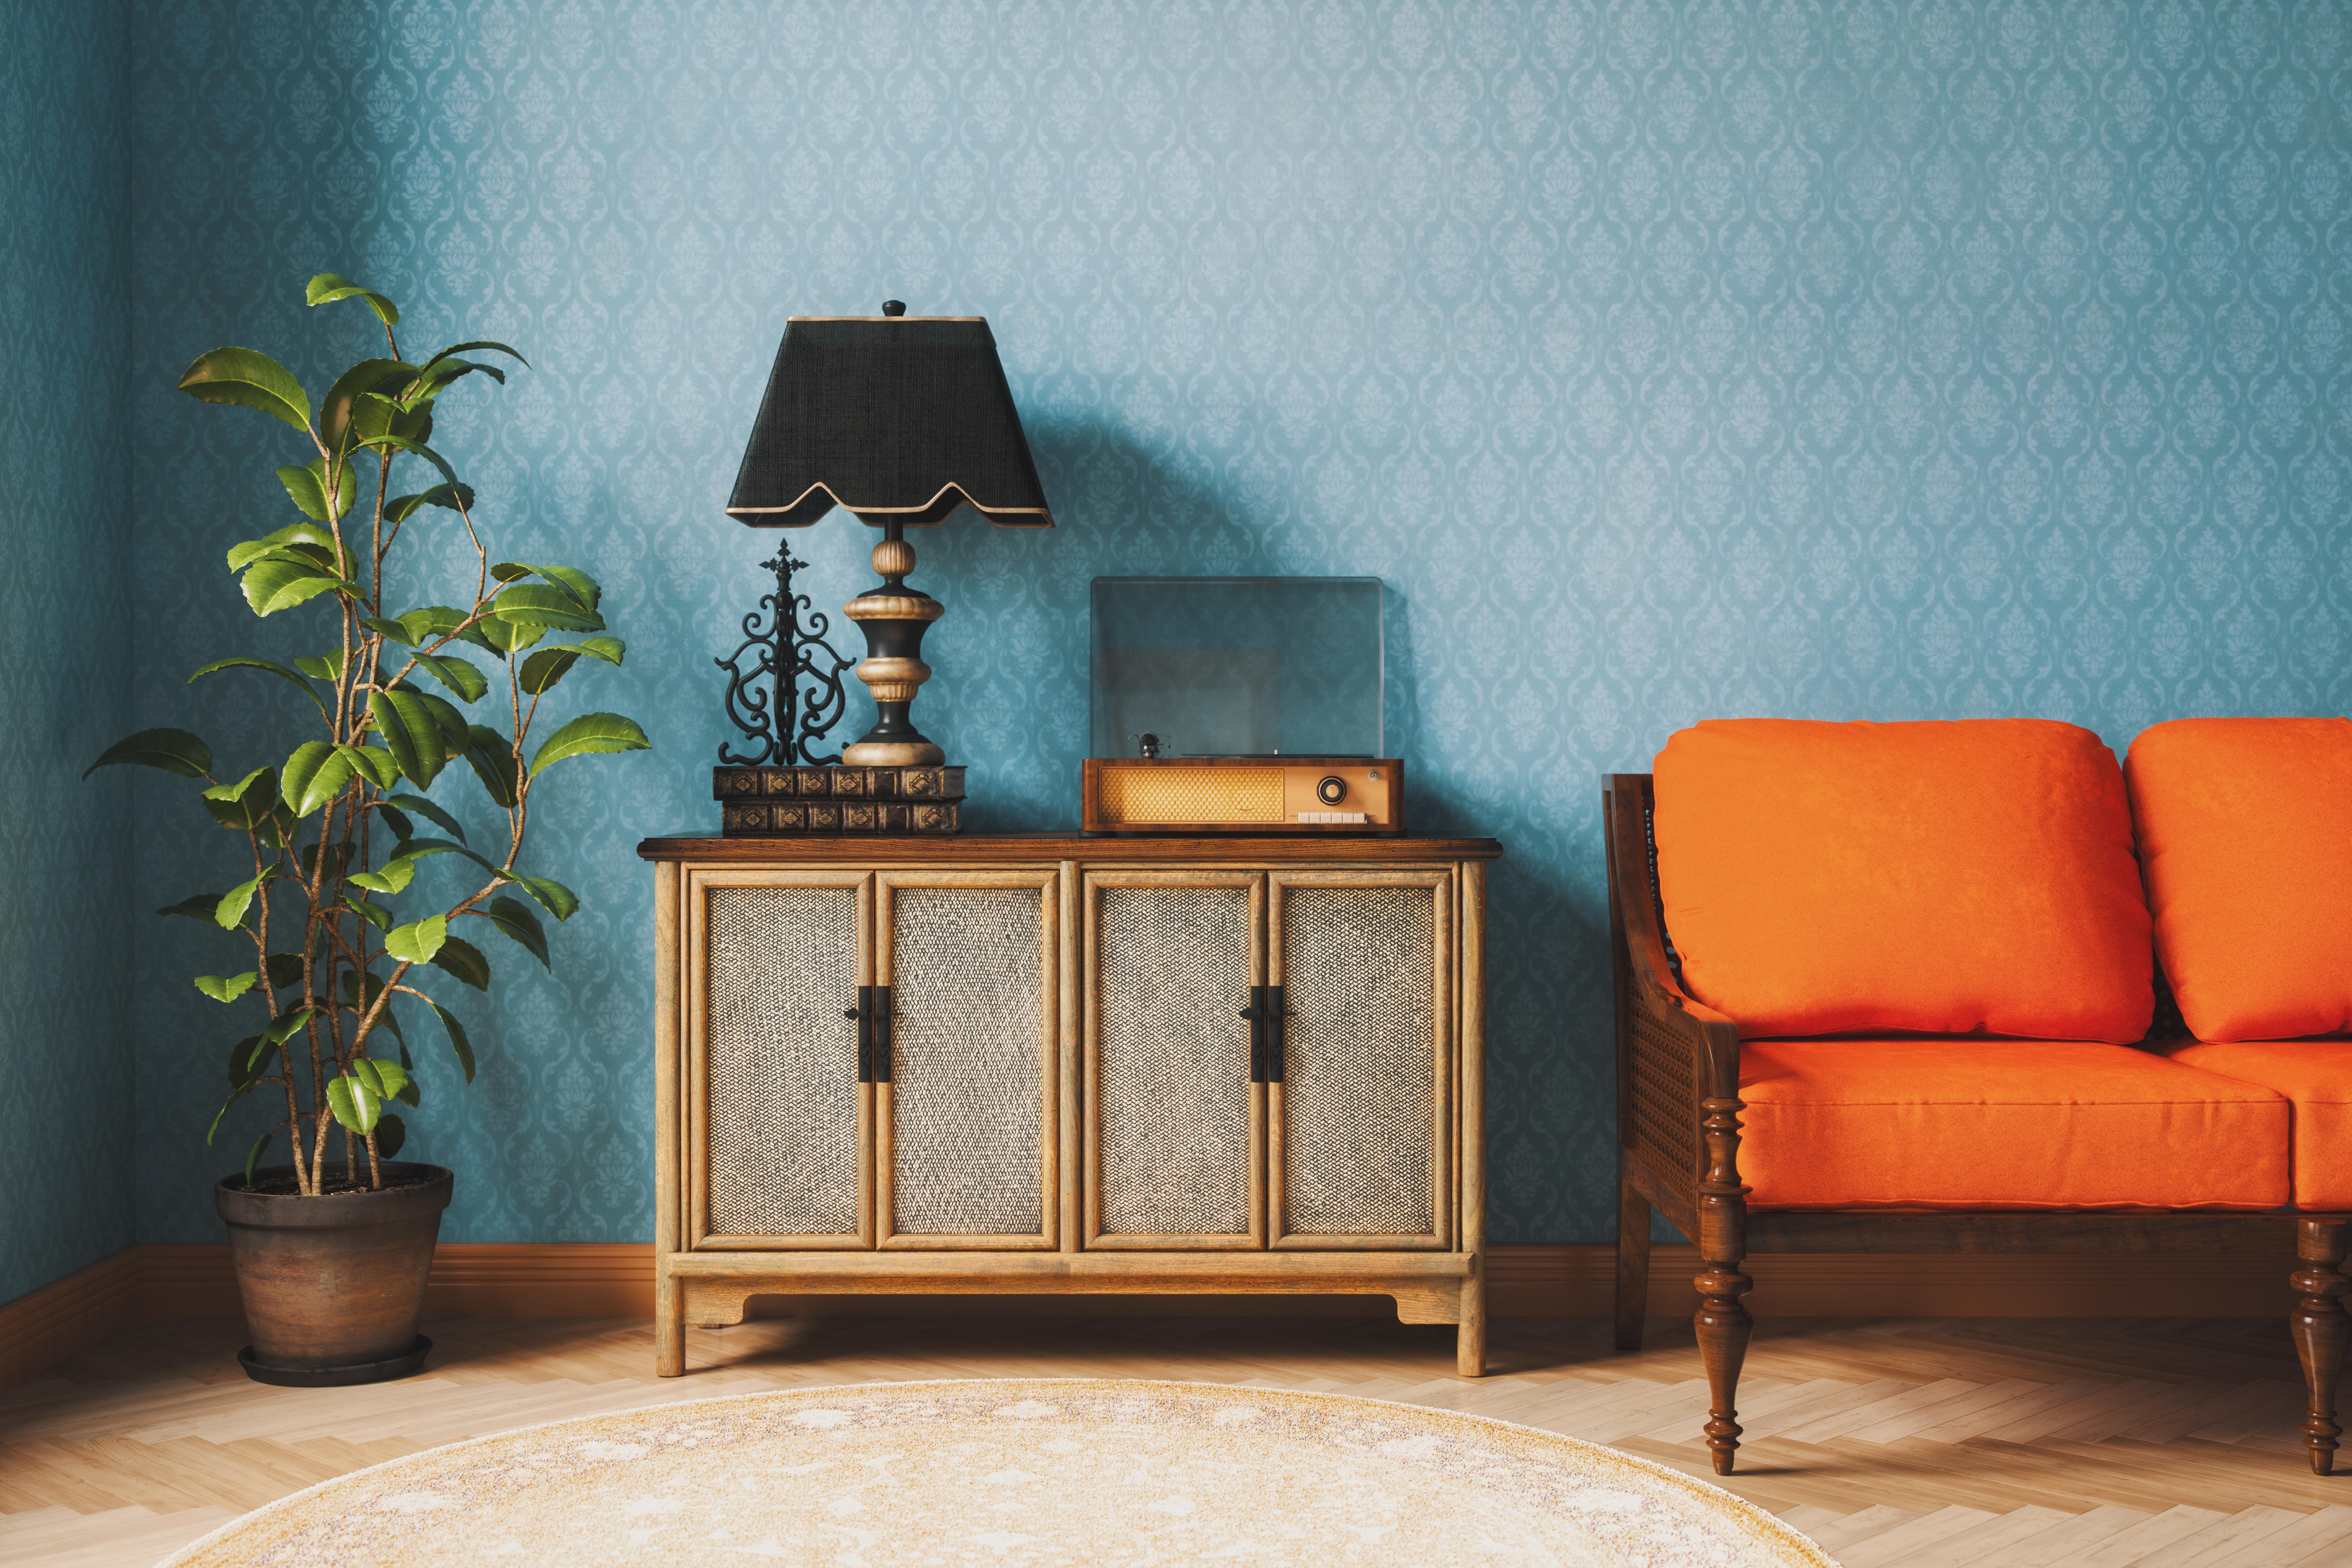 Eine Vintage-Lampe, eine Couch in Orange und ein alter Plattenspieler.